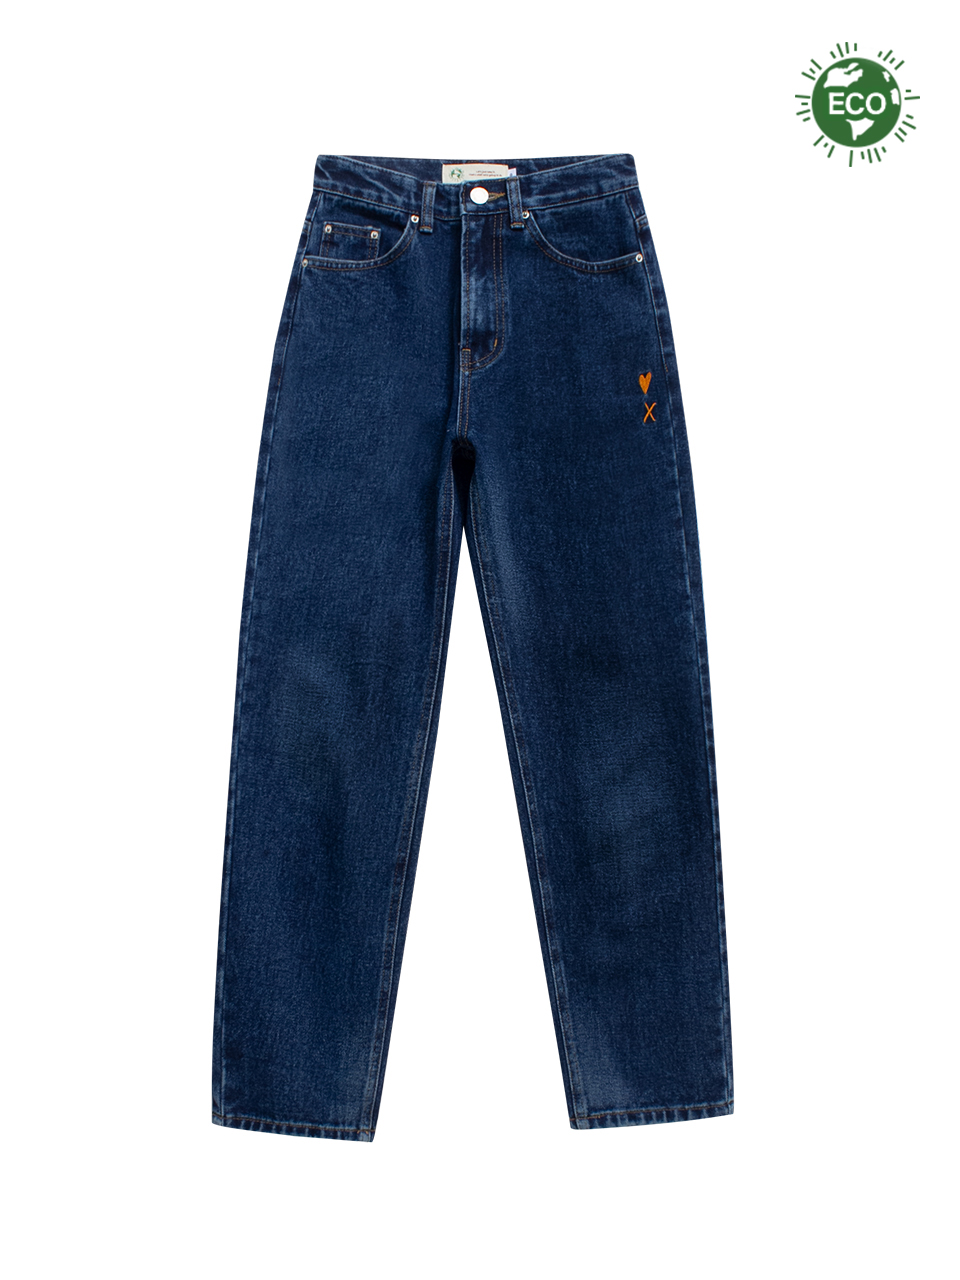 [BOY] Berlin Jeans